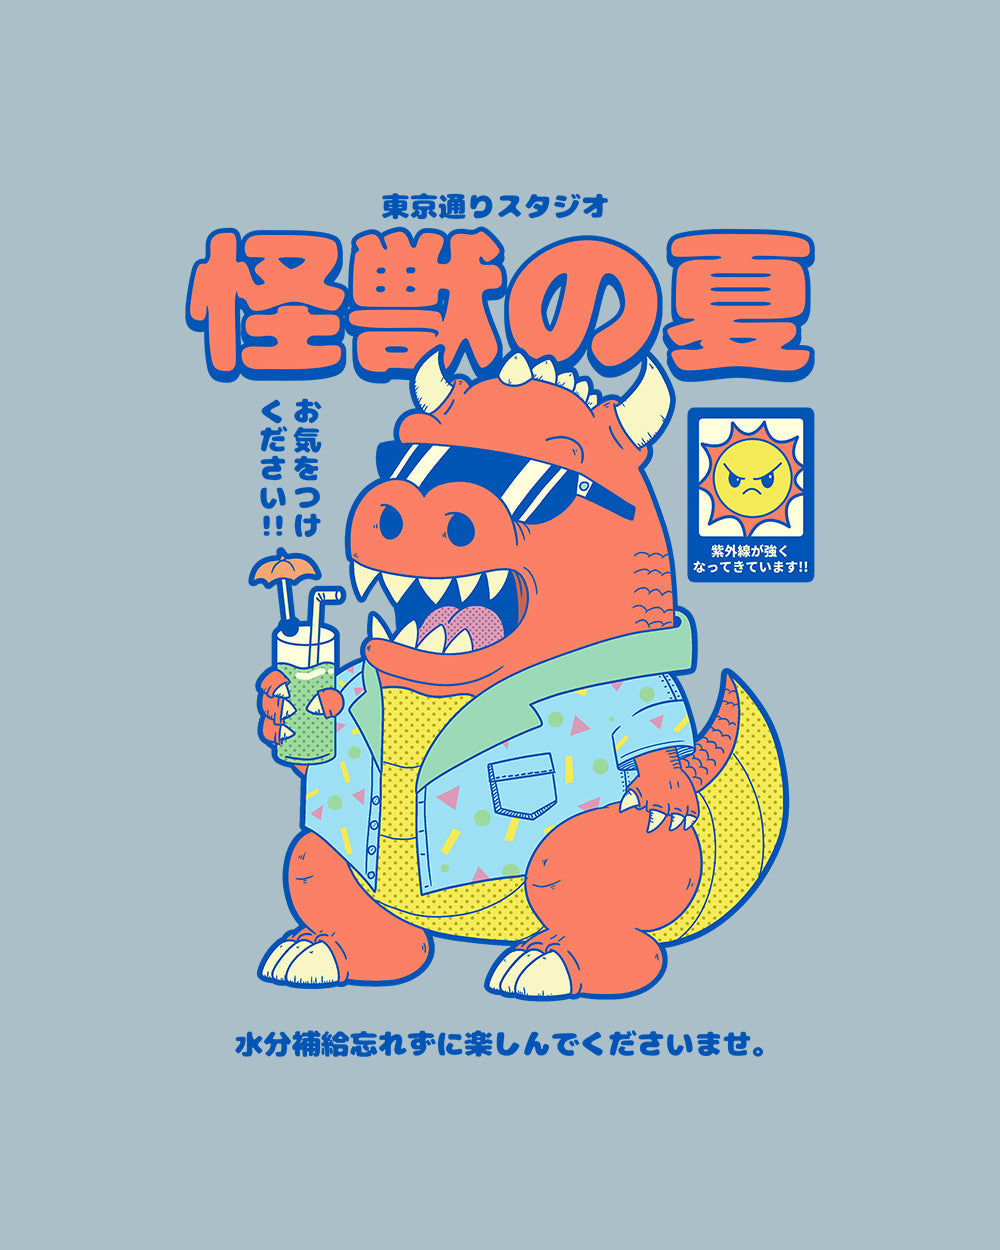 Kaiju's Summer T-Shirt Australia Online #colour_pale blue